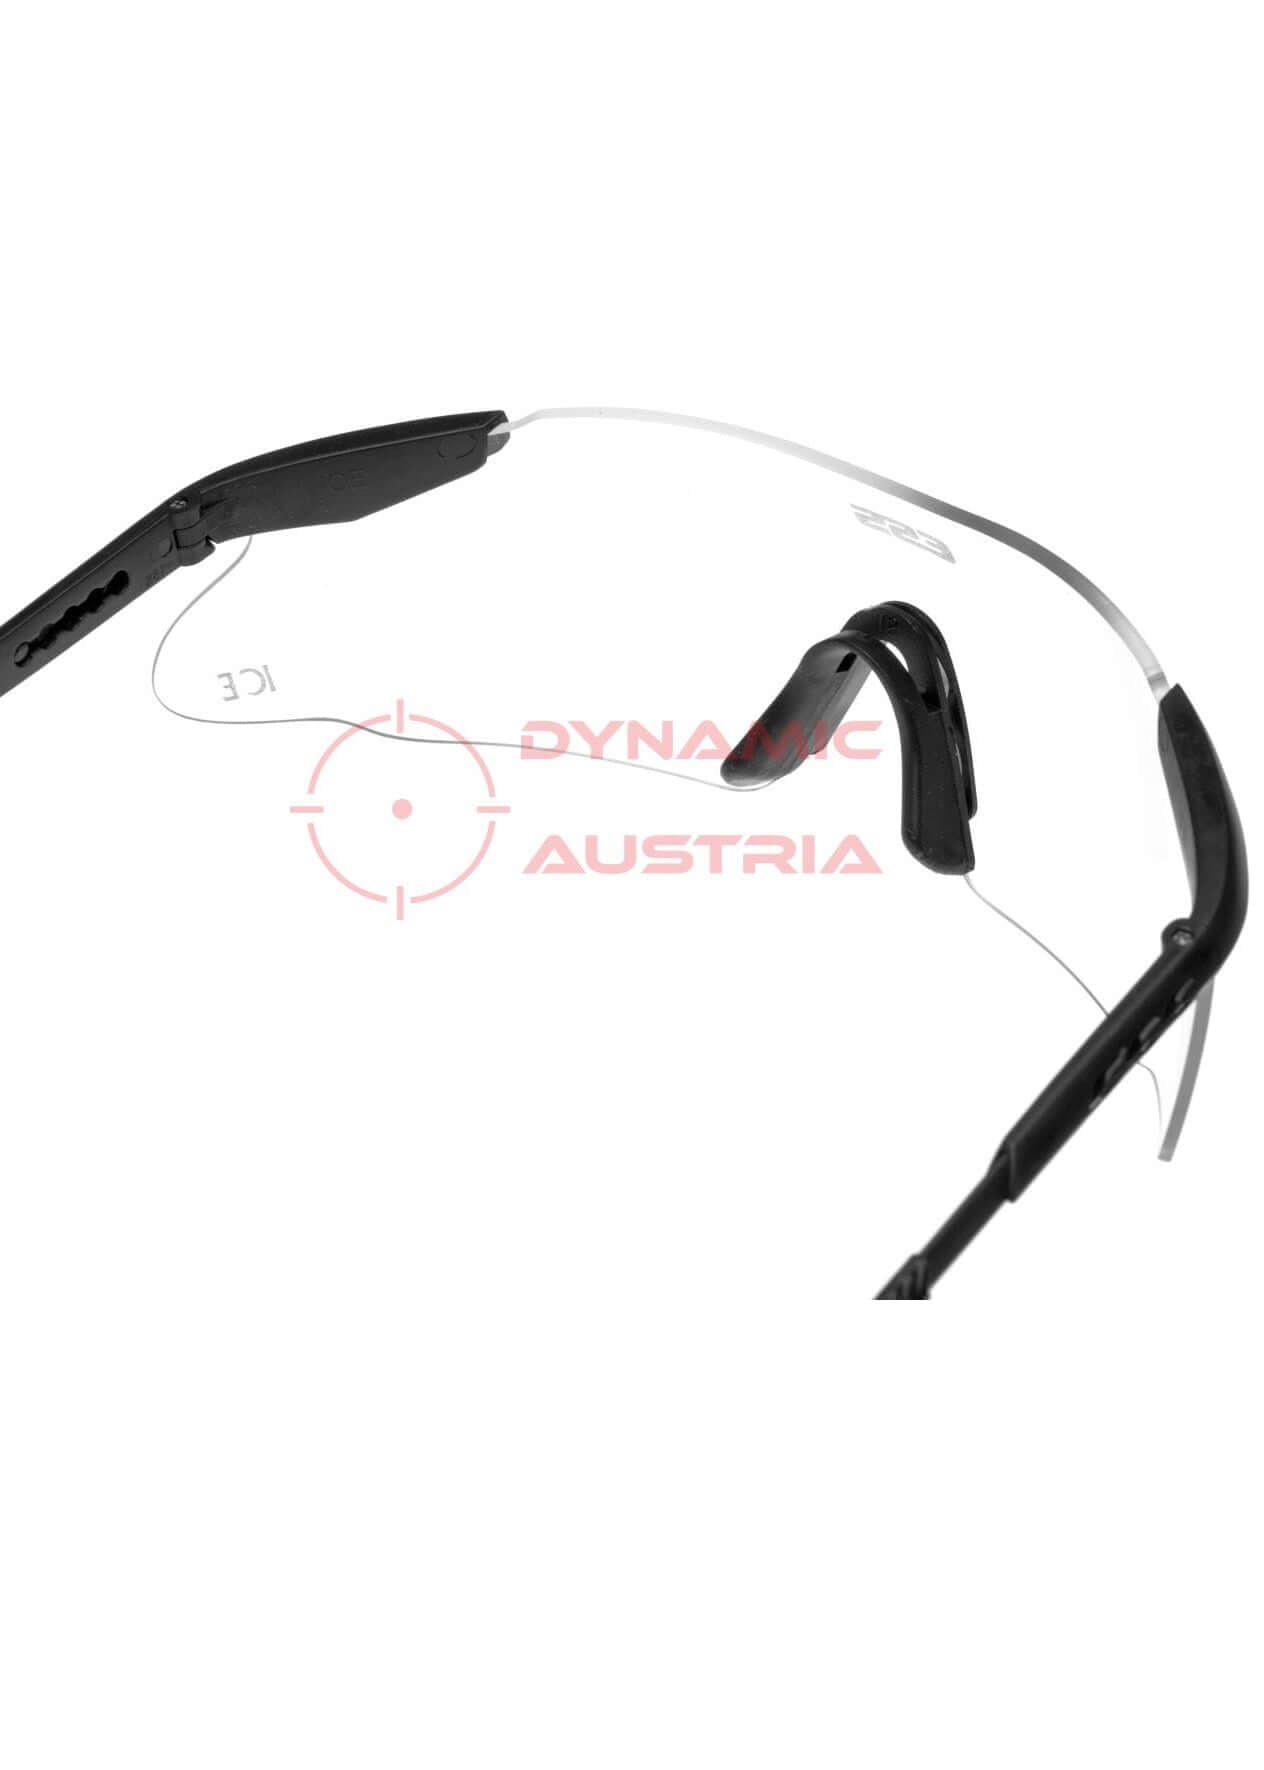 Schießbrille von ESS - Schutzbrille für Sportschützen zum Sportschießen